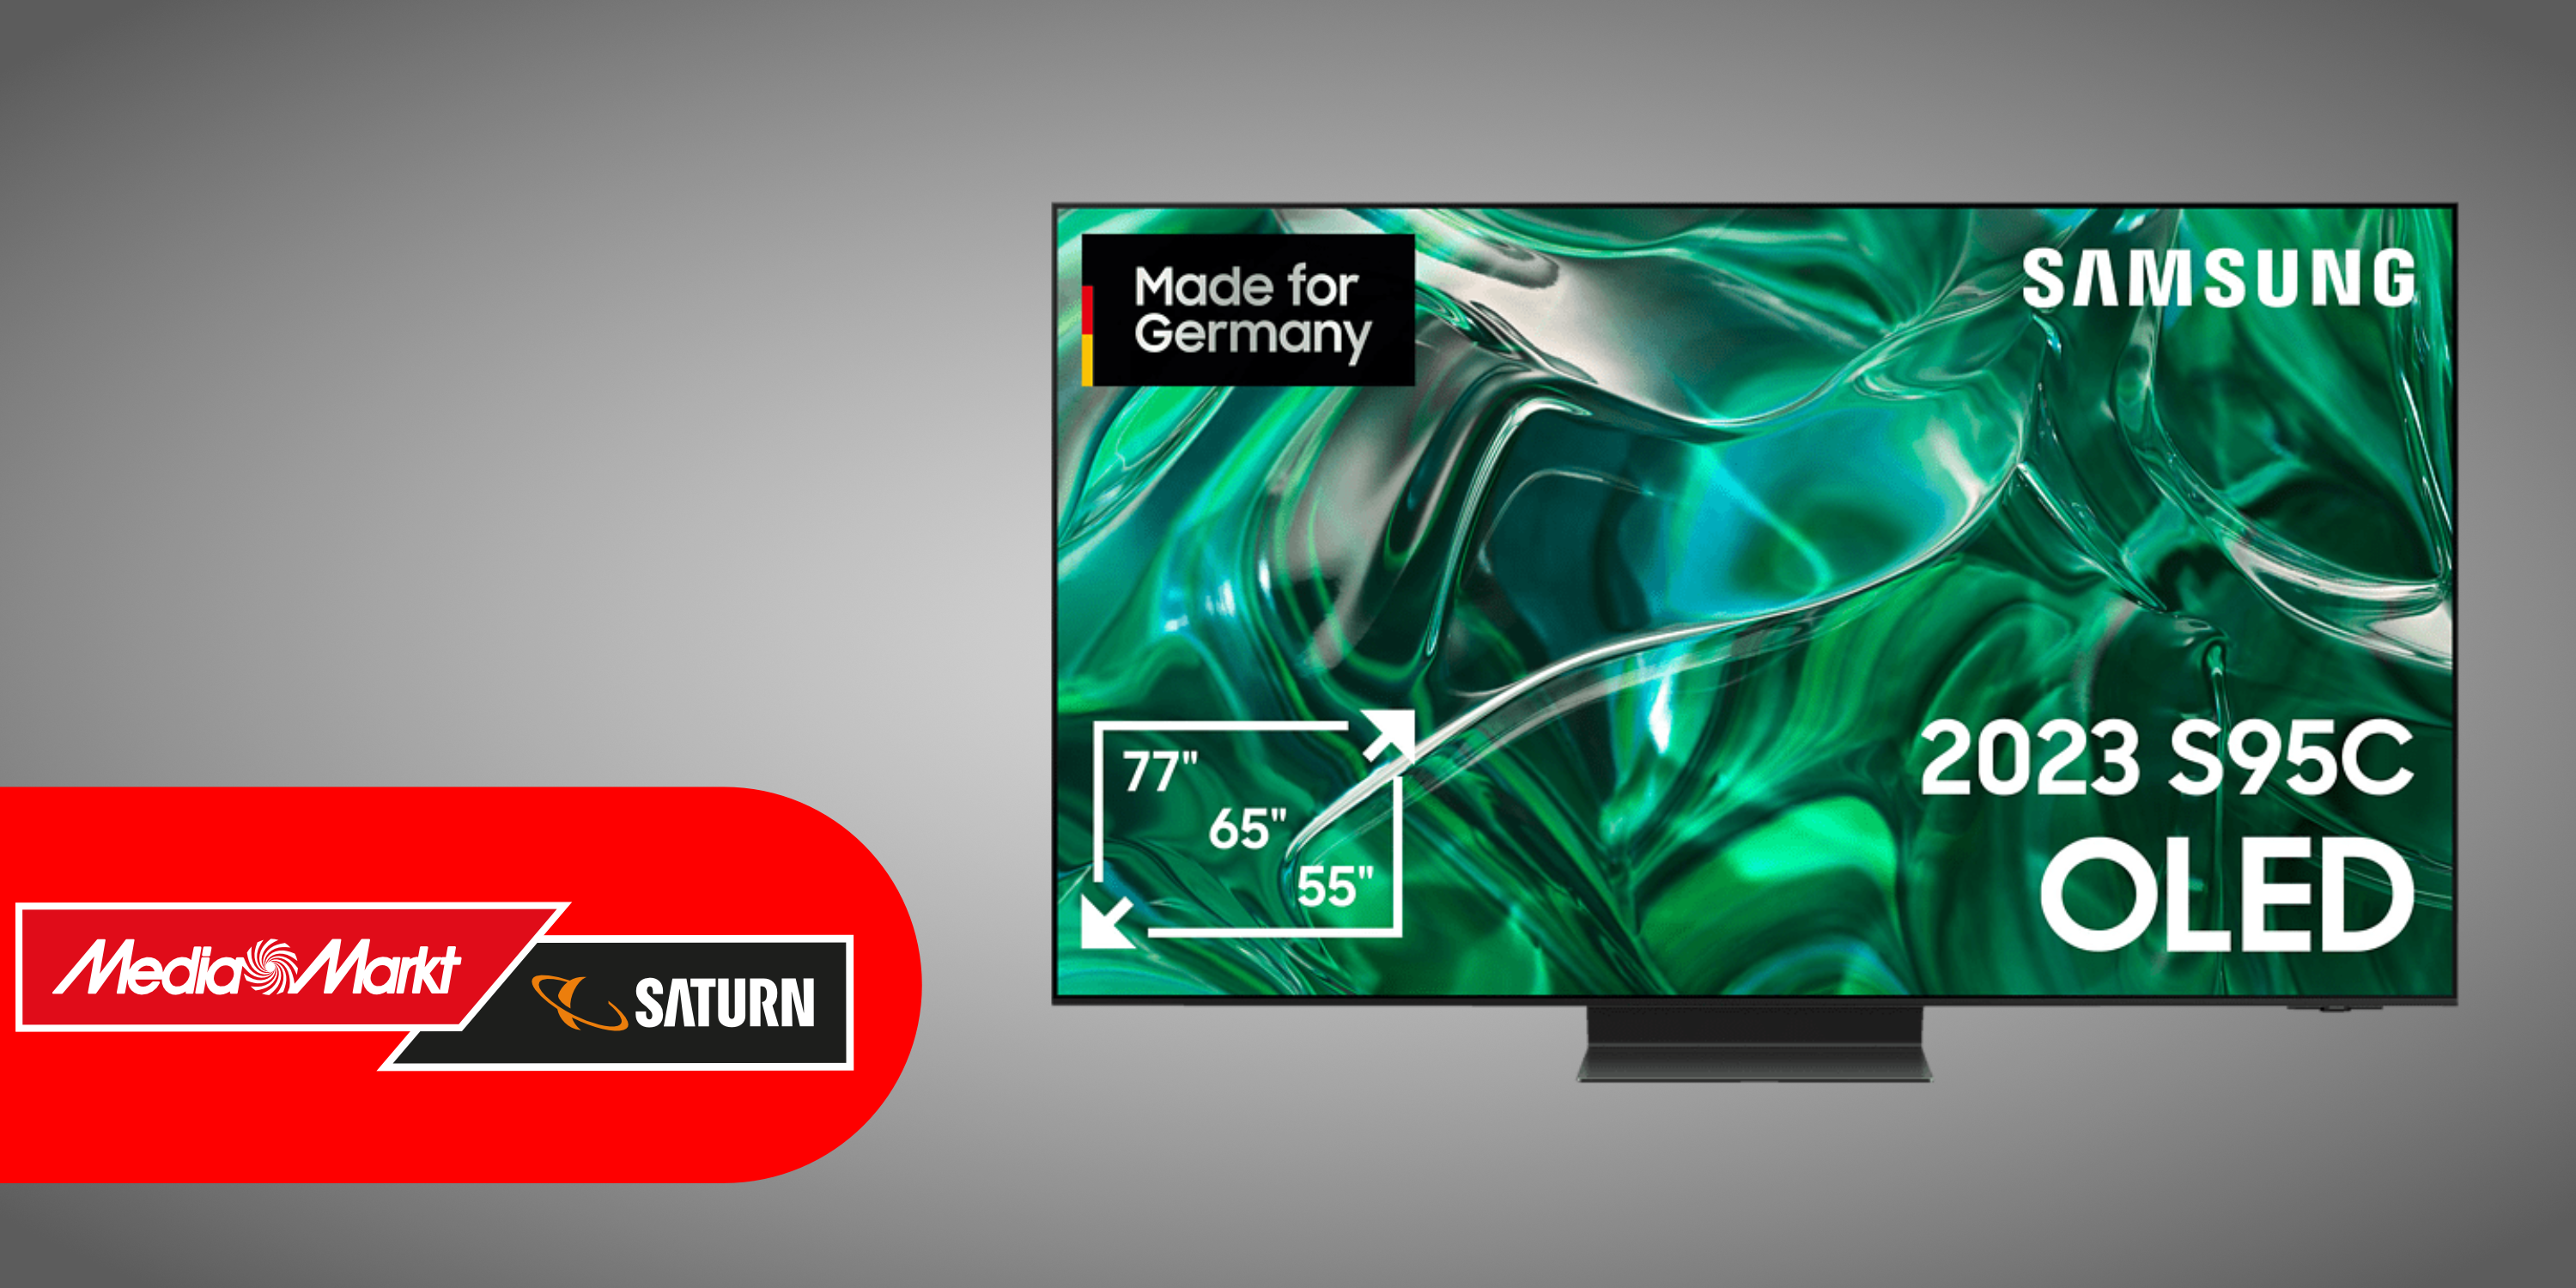 MediaMarkt verkauft Mini-LED-Fernseher mit 55 Zoll zum aktuellen Bestpreis